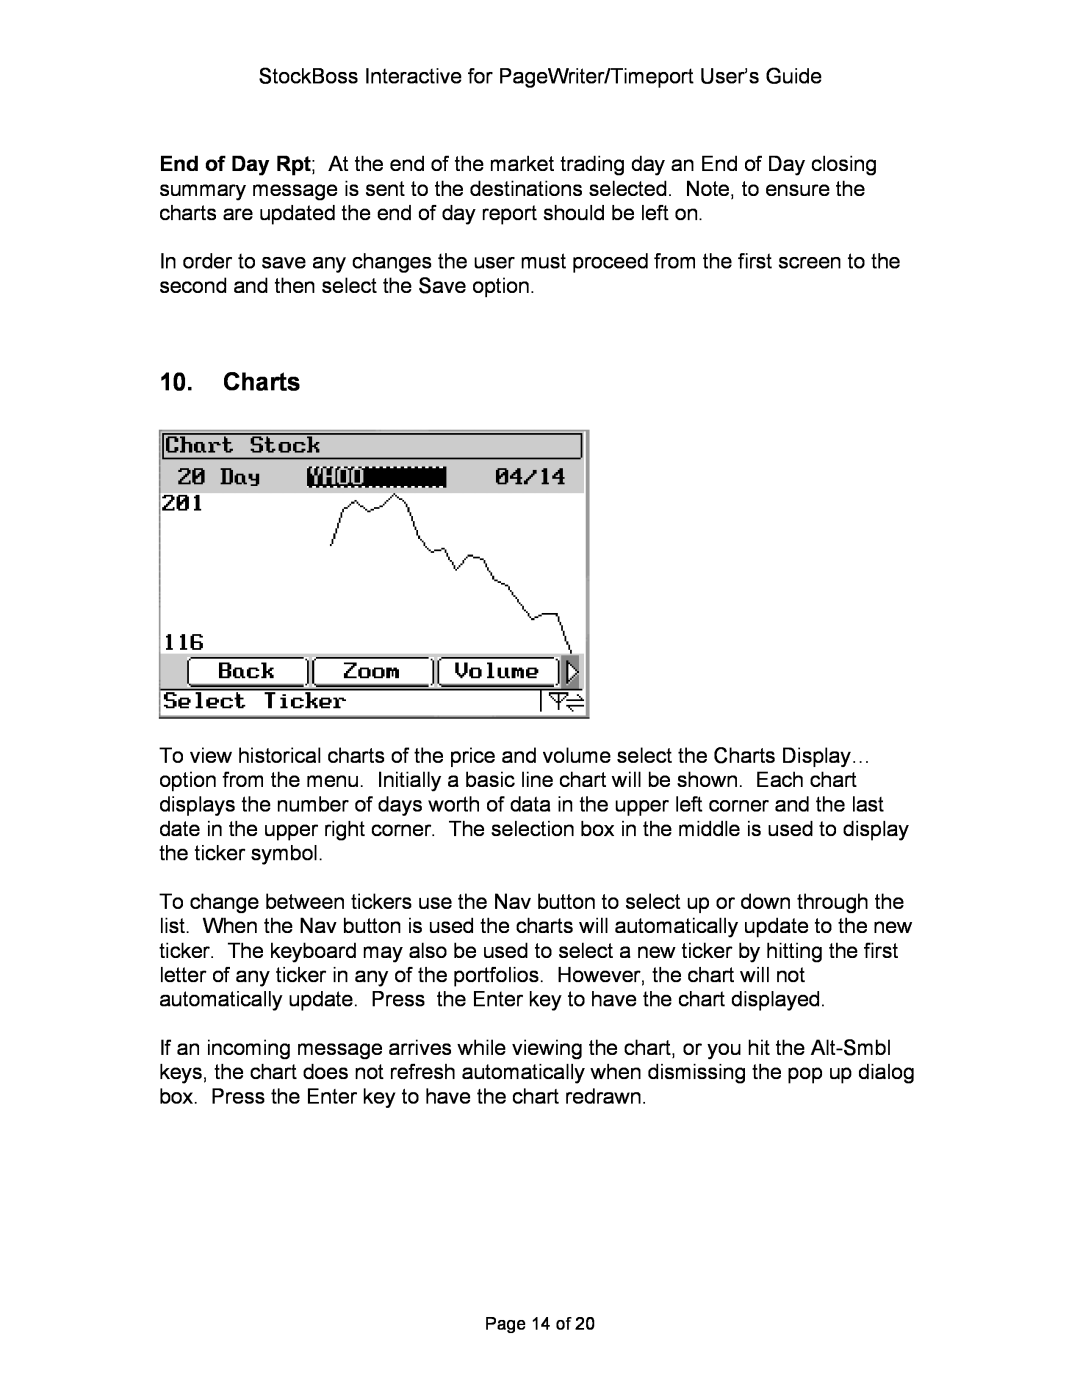 Motorola P930 Series manual Charts, Page 14 of 